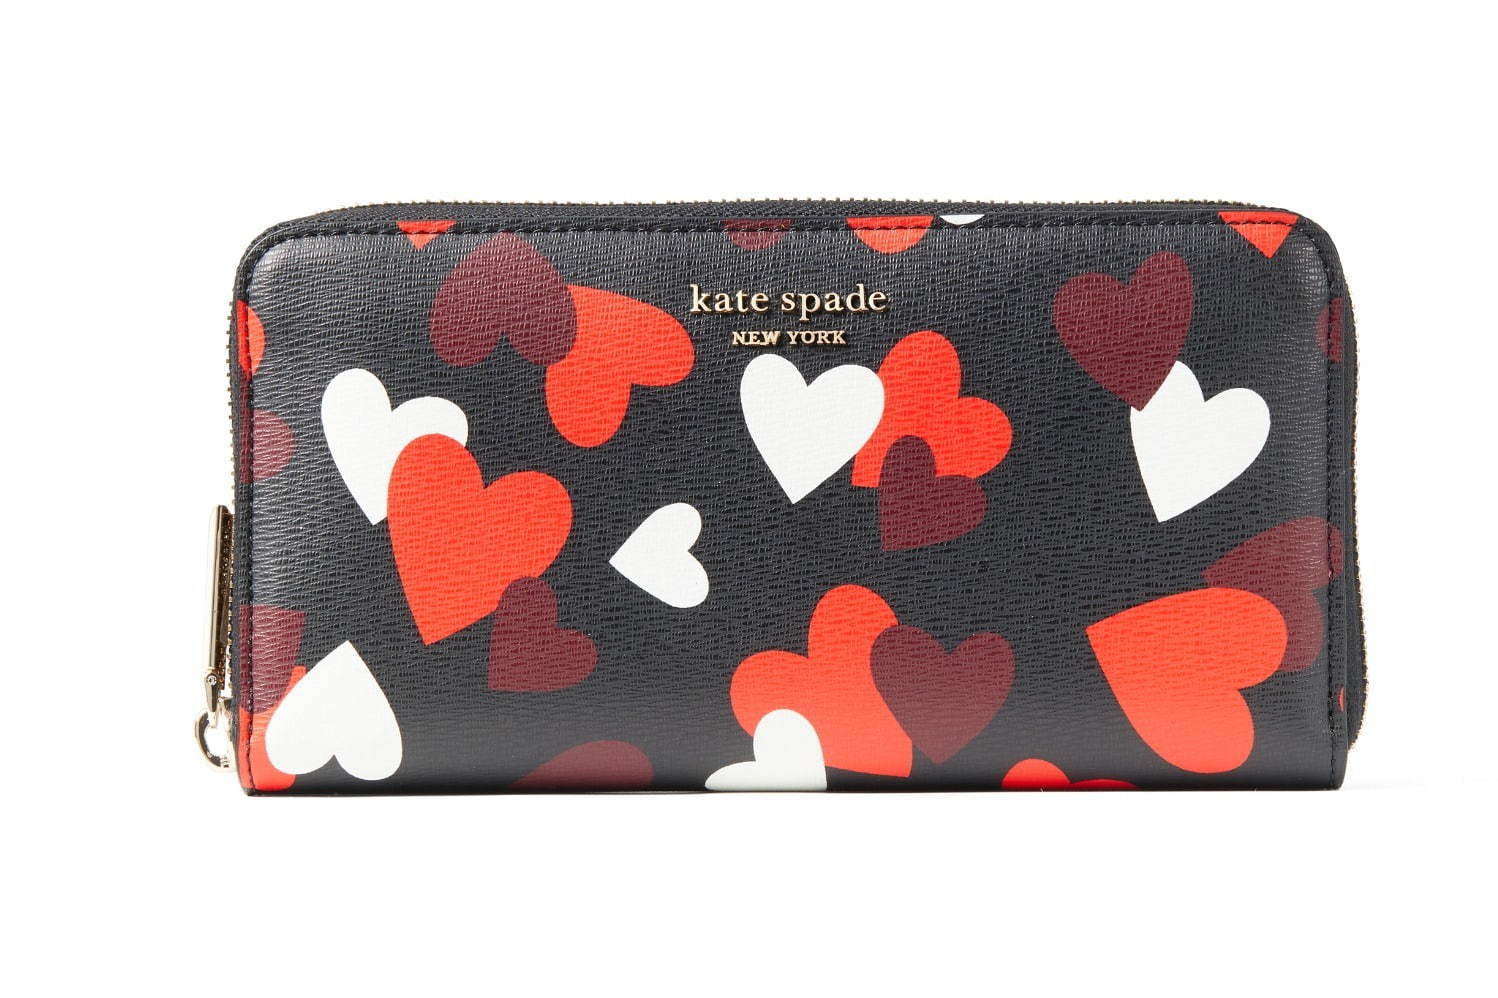 ケイト・スペード2021年バレンタインギフト、“ハート”モチーフの財布 ...